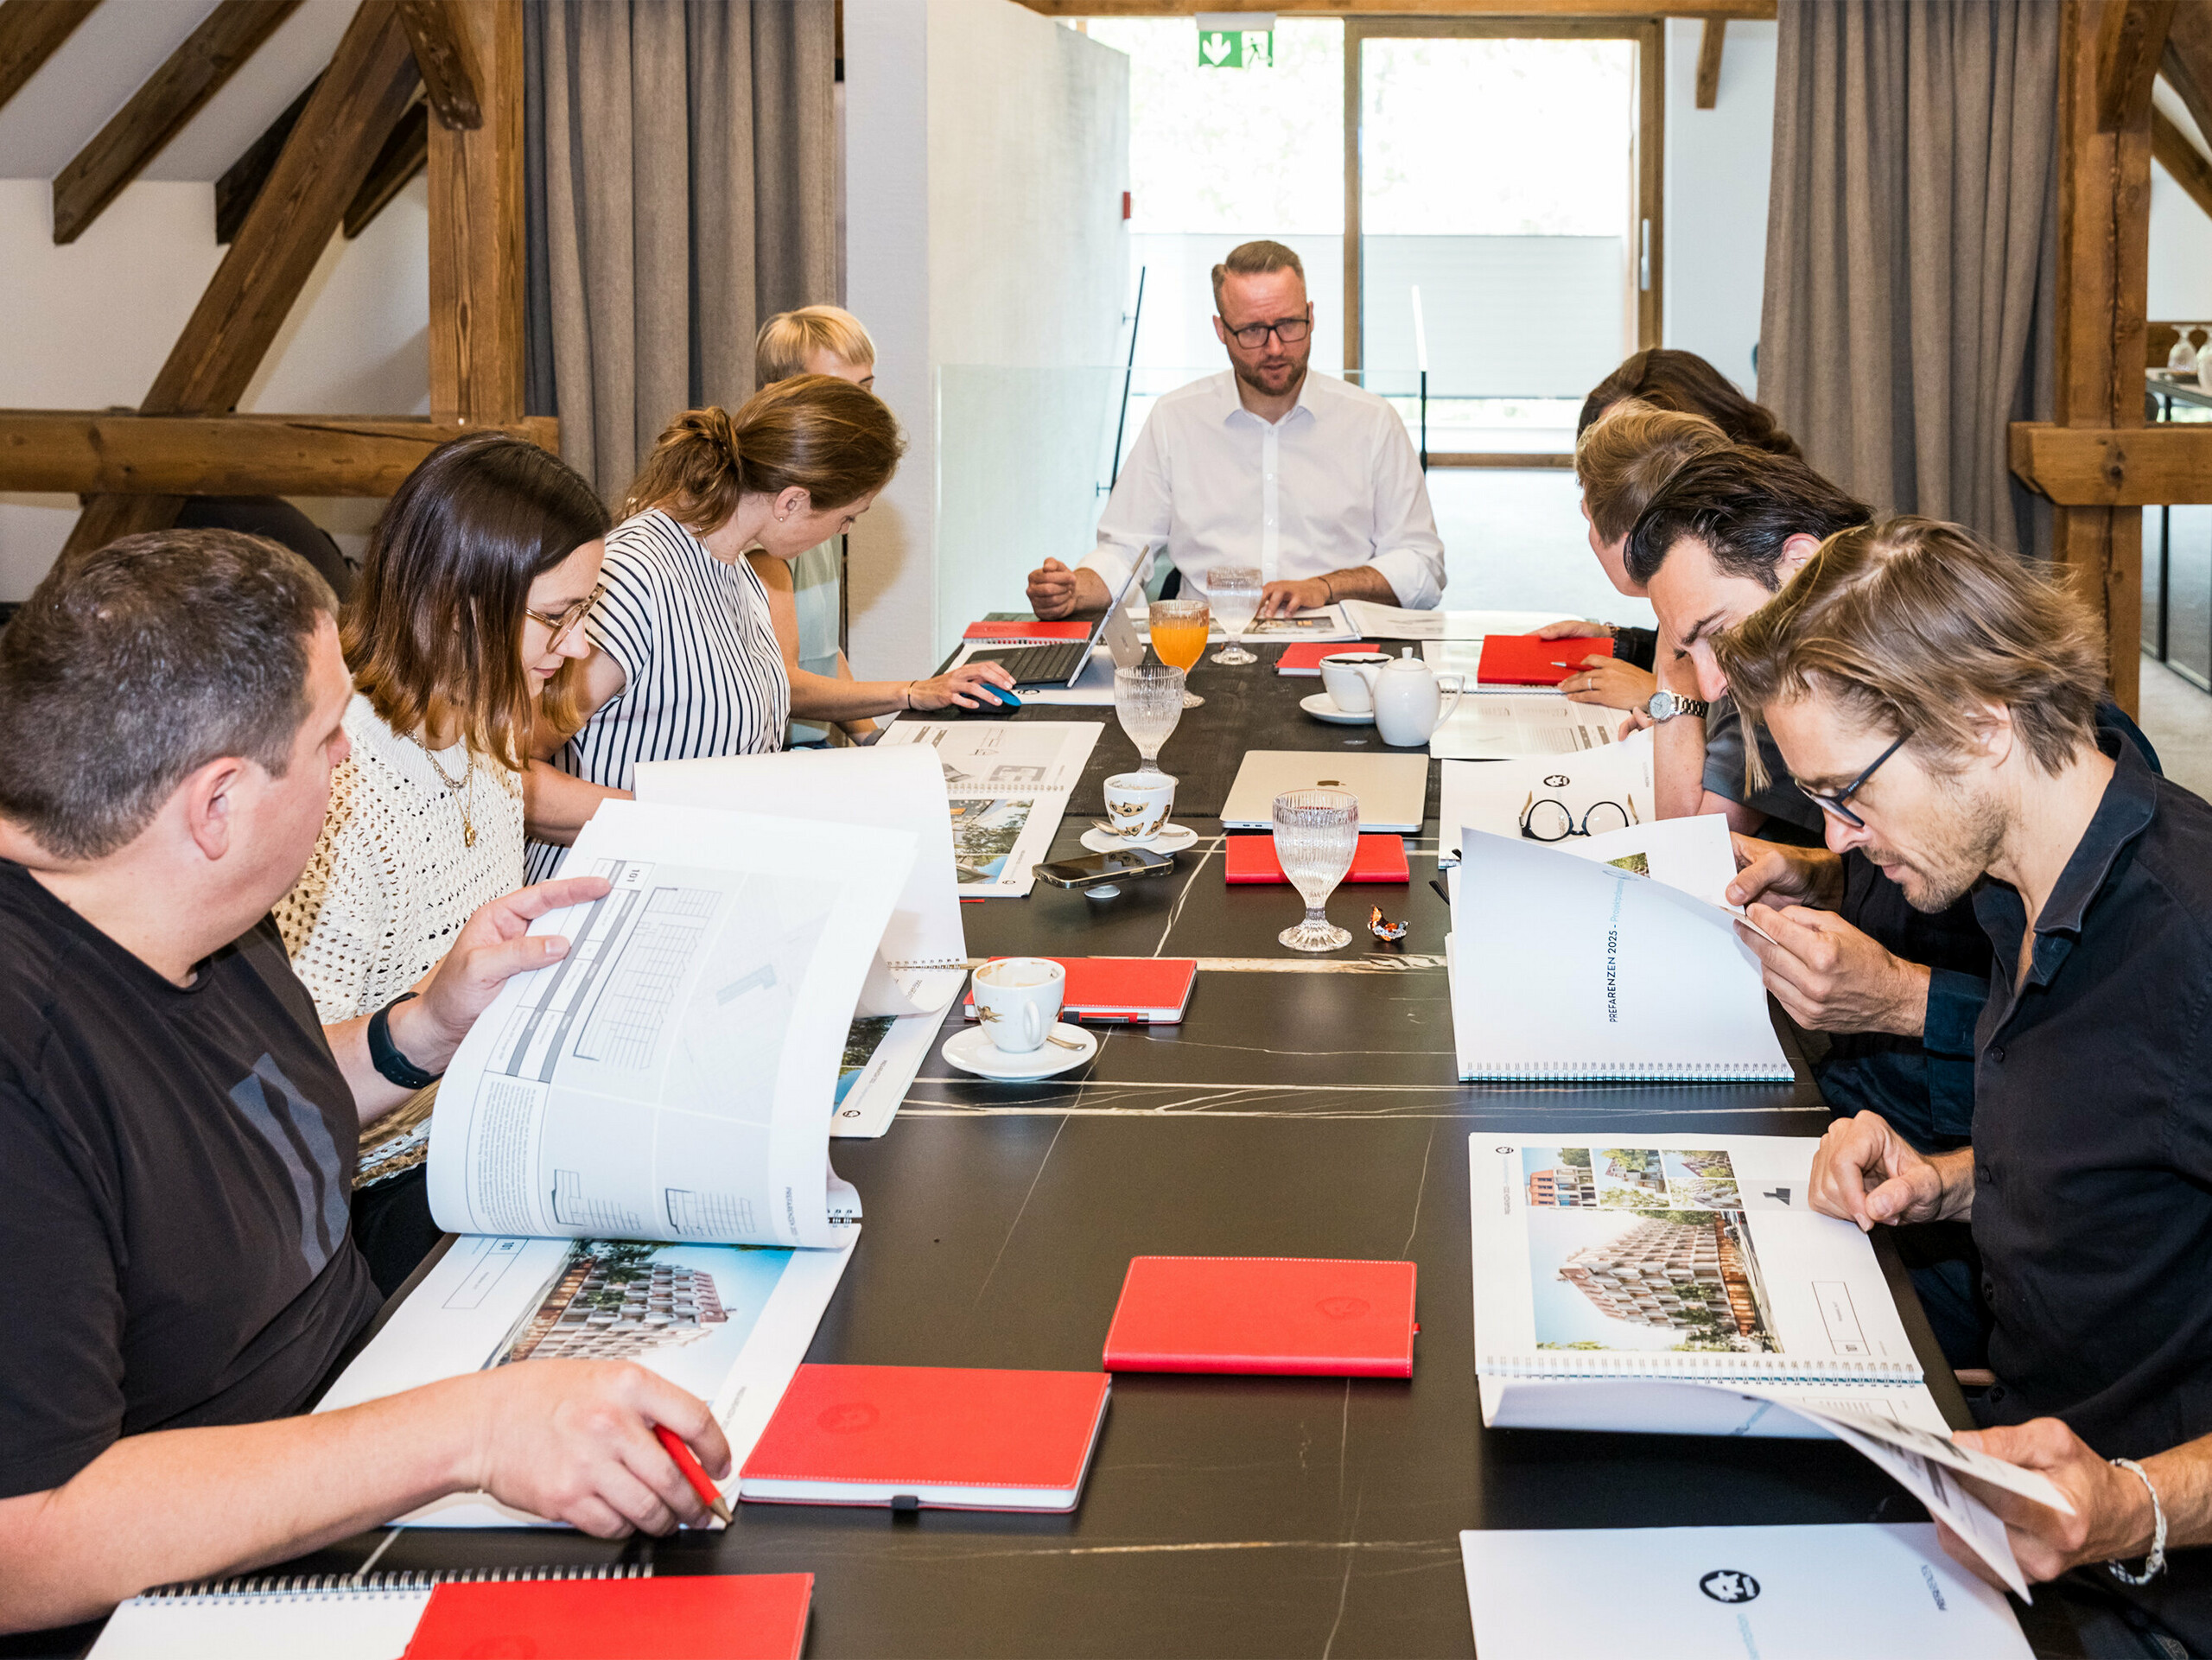 PREFARENZEN 2025 Odborný dialog: Deset architektů a expertů PREFA sedí u konferenčního stolu v sídle vinaře v Seewinkelu v Burgenlandu. Na stole jsou dokumenty a architektonické plány, zatímco účastníci intenzivně diskutují a vybírají dvanáct nejzajímavějších architektonických objektů pro PREFA Architecture Platform 2025. Diskuse je věnována ekologickým a společenským výzvám, funkčnosti, jednoduchosti a přidané hodnotě architektury. Na stole jsou také rozházené kávové šálky, sklenice a červené sešity, což podtrhuje soustředěnou pracovní atmosféru.